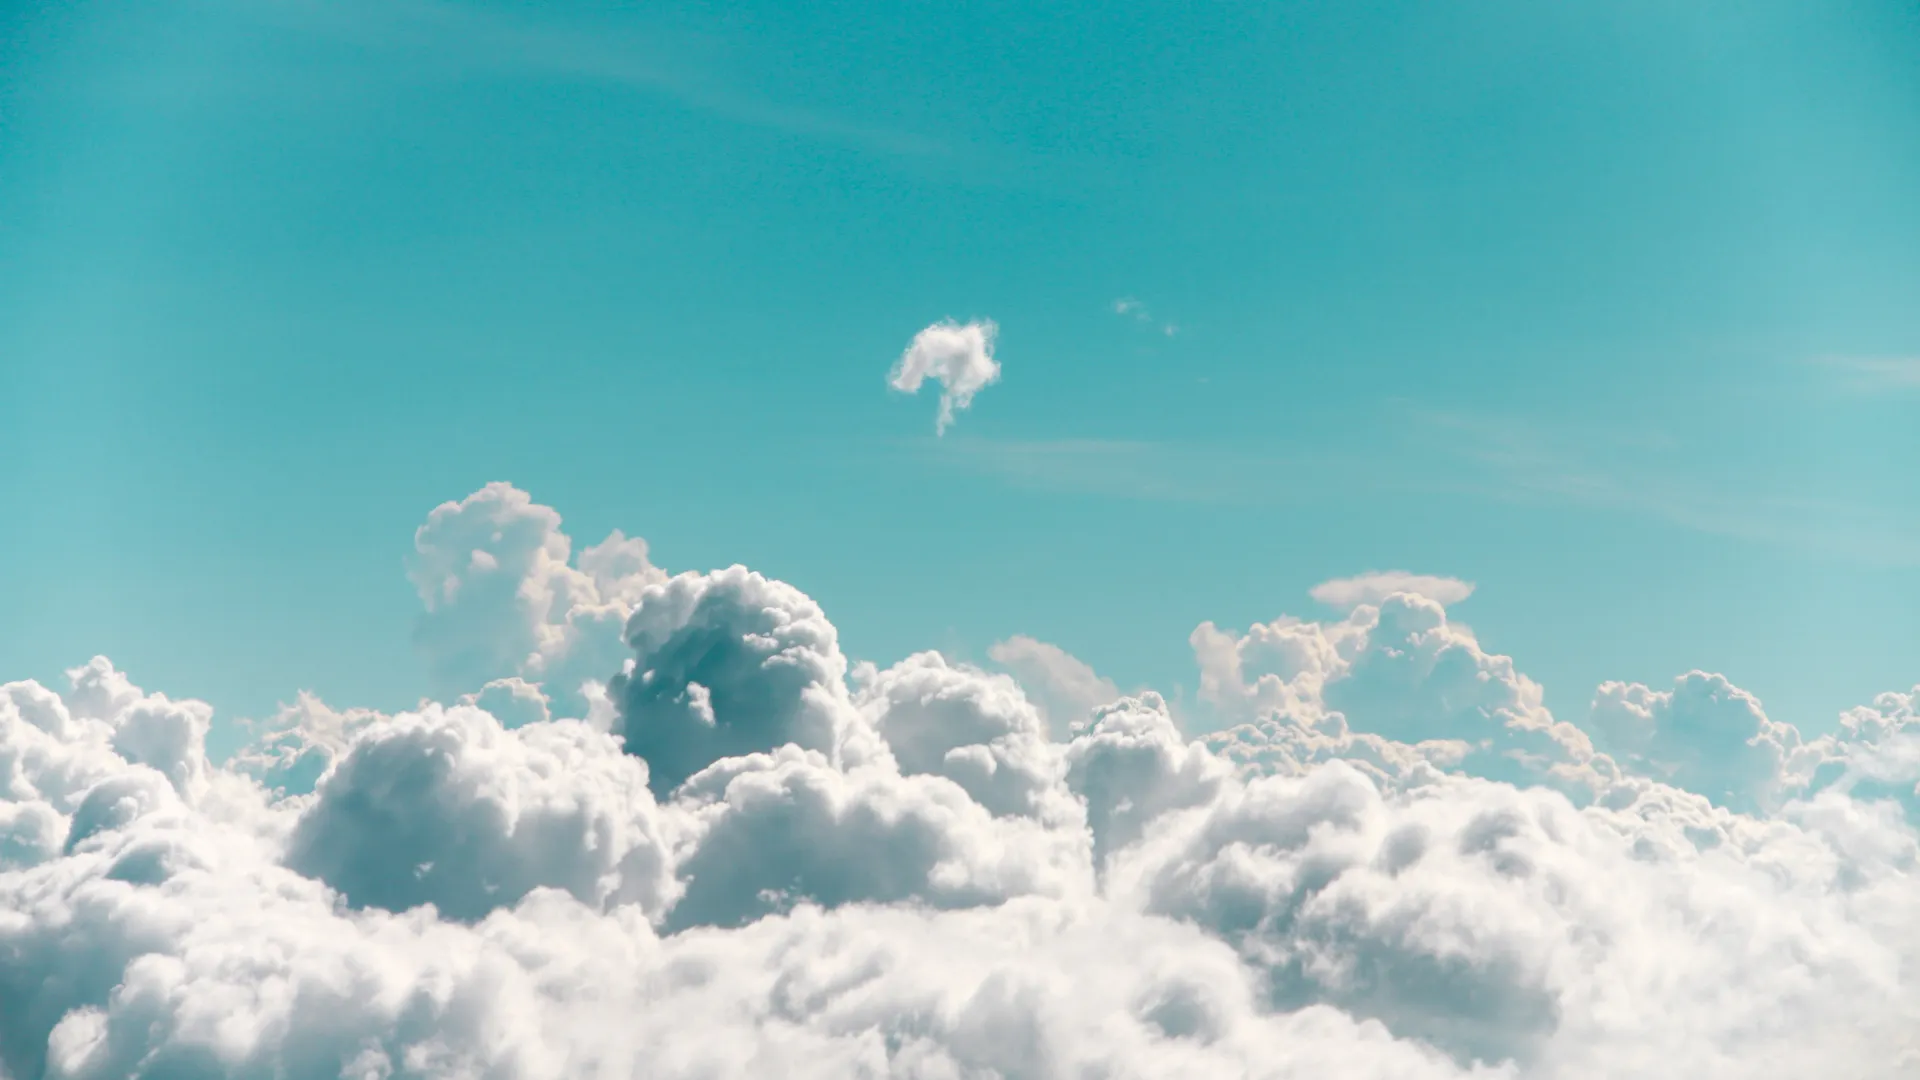 Has your business met cloud computing yet?